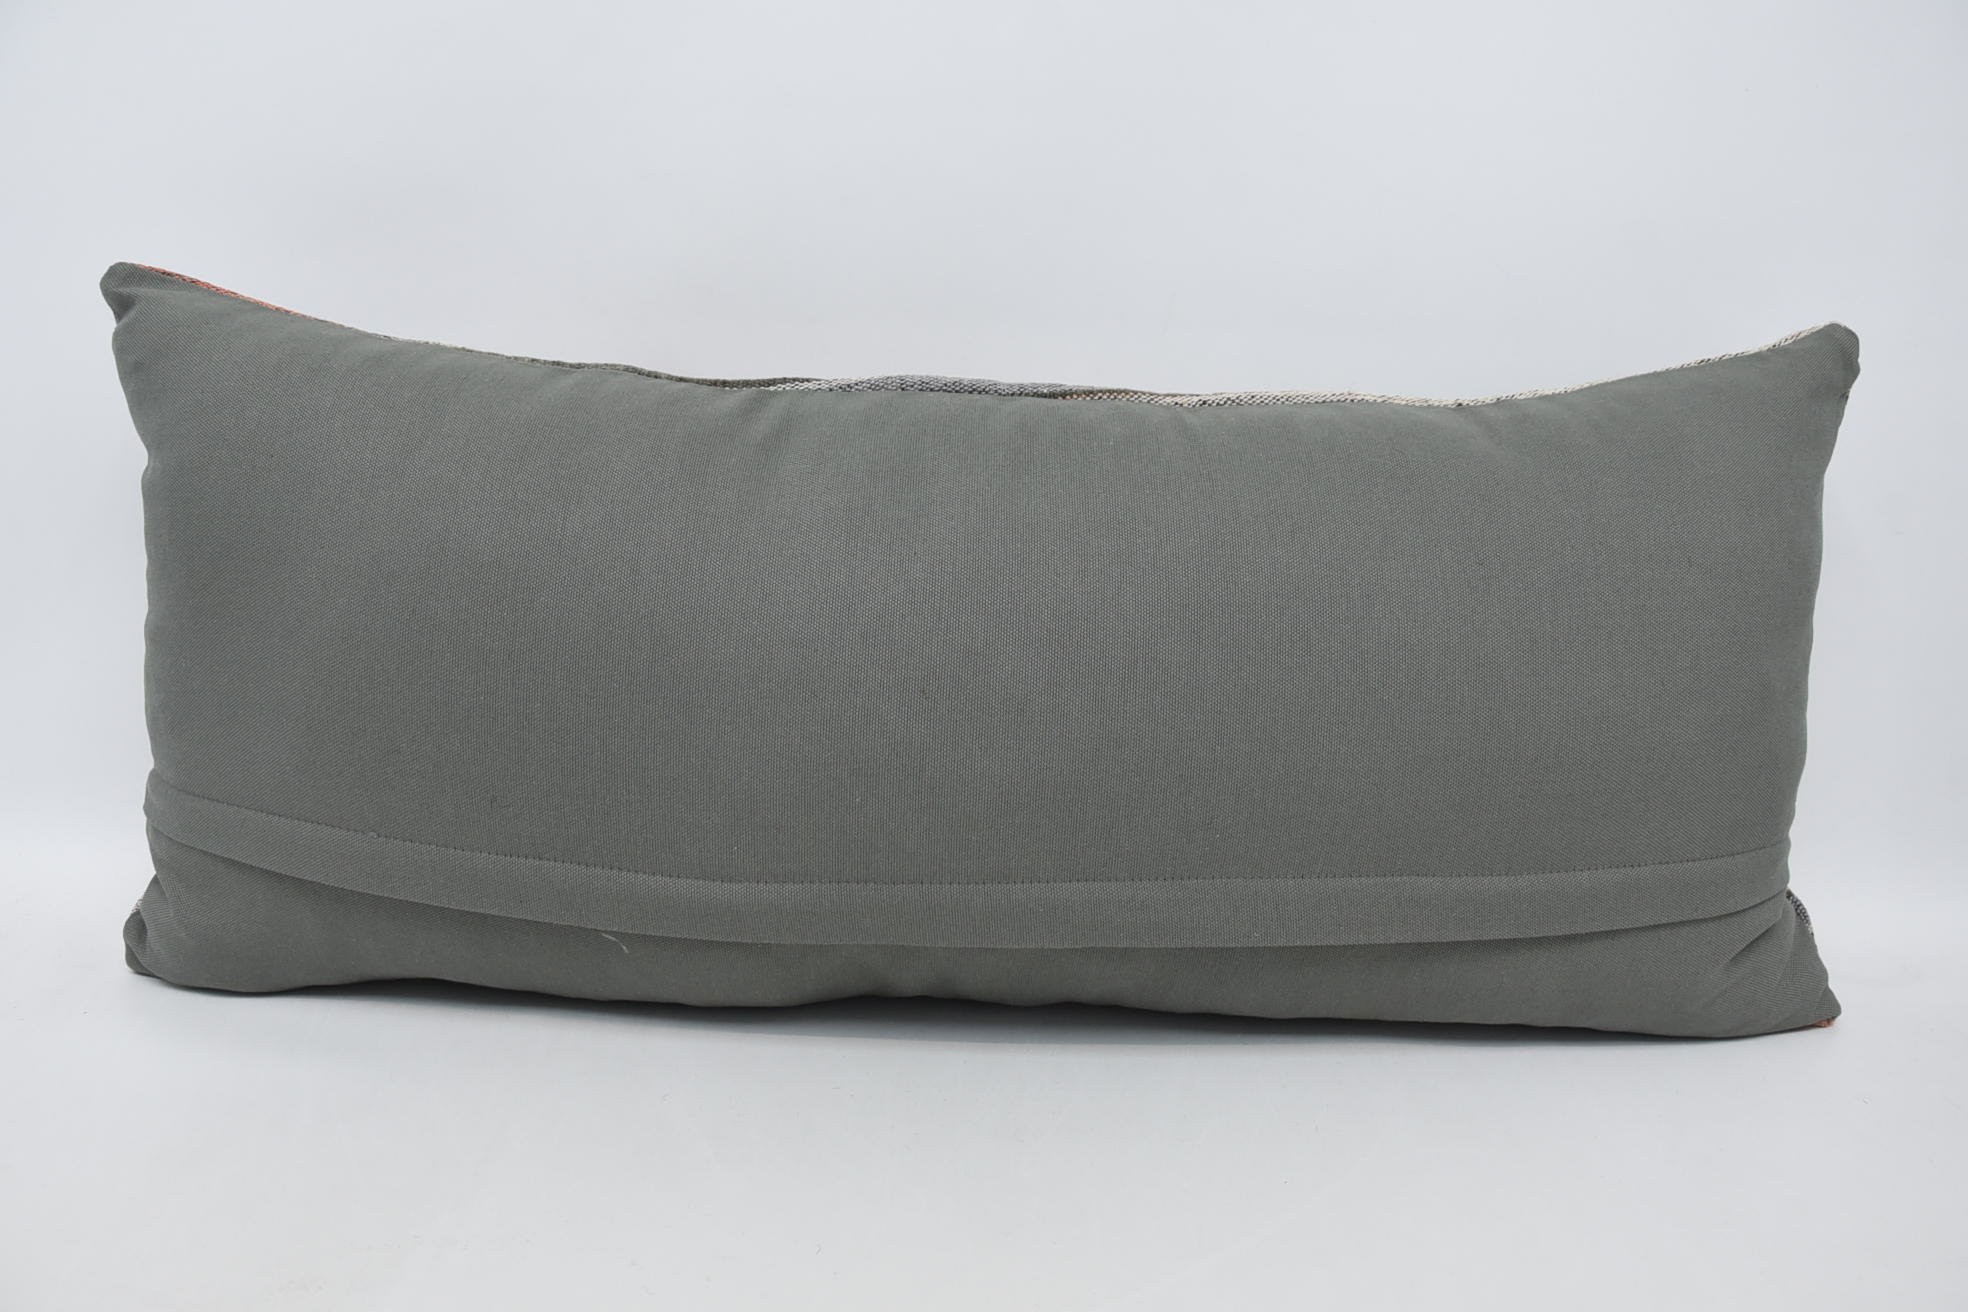 16"x36" Blue Cushion Cover, Throw Kilim Pillow, Gift Pillow, Kilim Cushion Sham, Outdoor Throw Cushion Cover, Neutral Throw Cushion